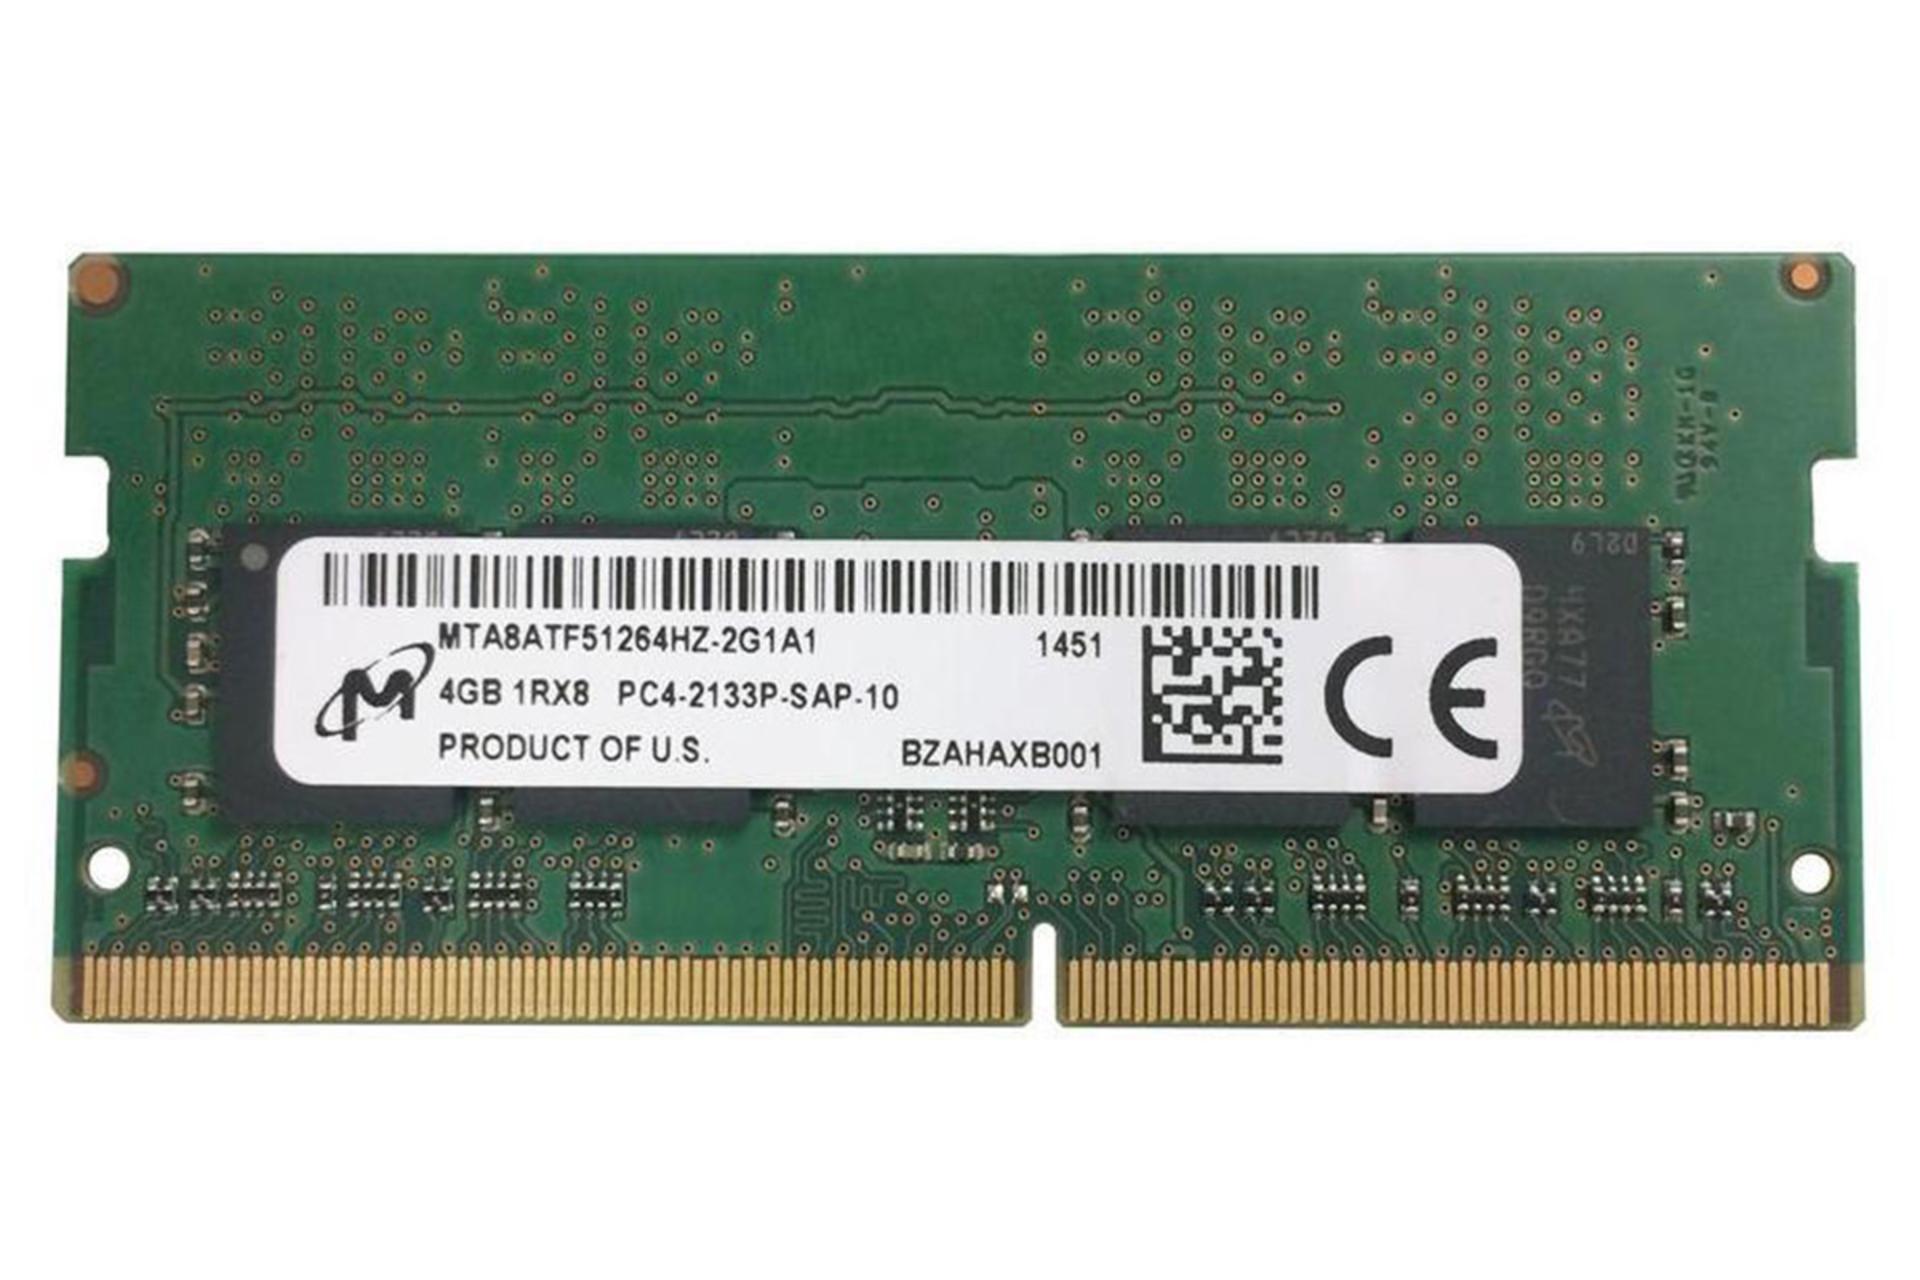 نمای جلوی رم مایکرون MTA8ATF51264HZ-2G1A1 ظرفیت 4 گیگابایت از نوع DDR4-2133